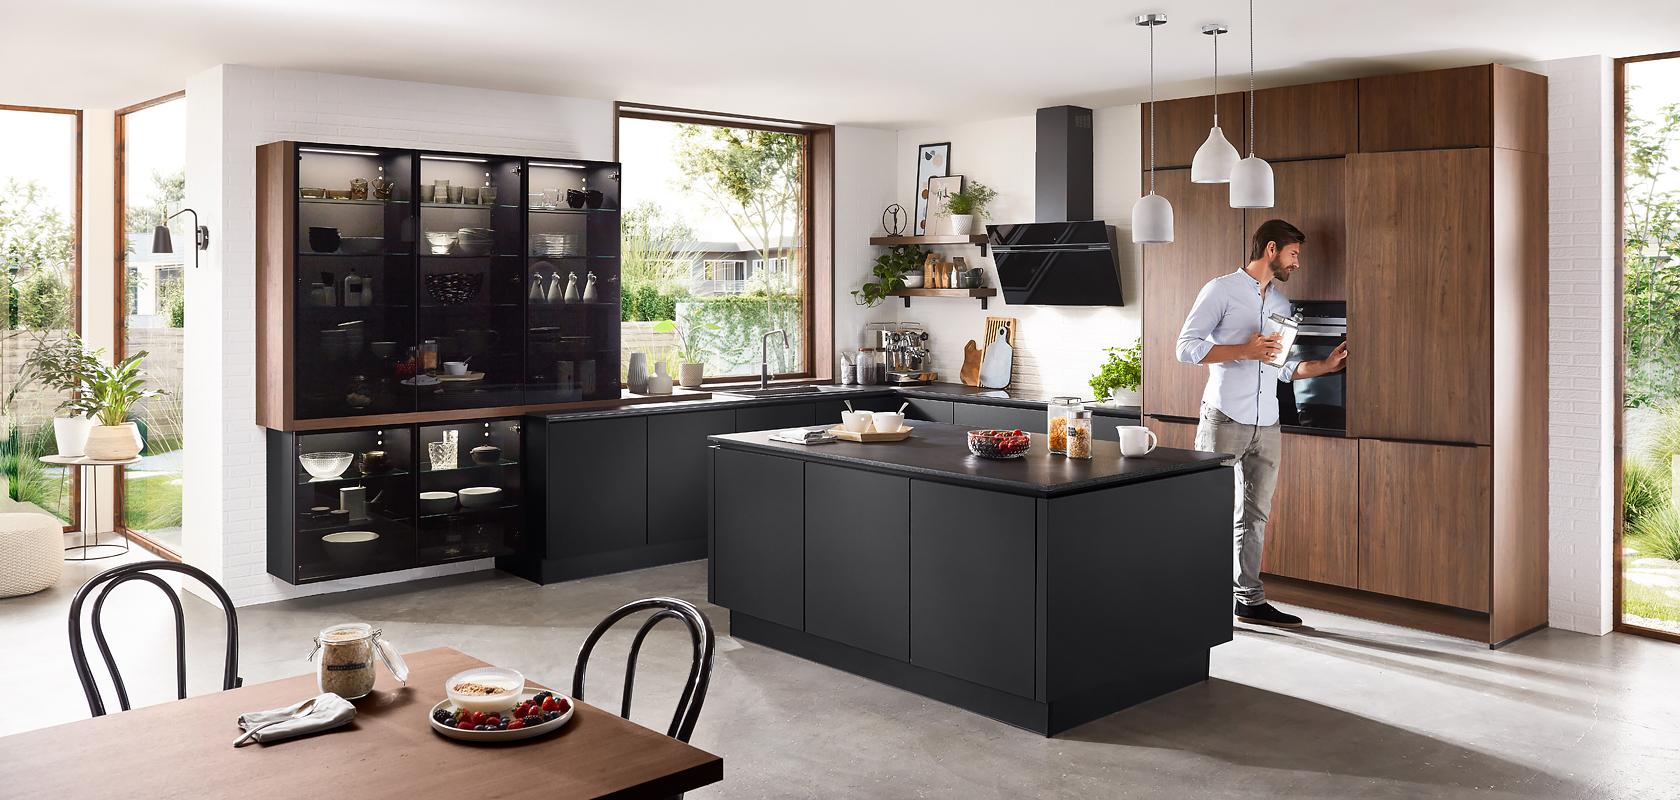 Interni di cucina moderna con mobili neri eleganti, dettagli in legno e un uomo che prepara una bevanda sul piano di lavoro, creando un'atmosfera accogliente e contemporanea.